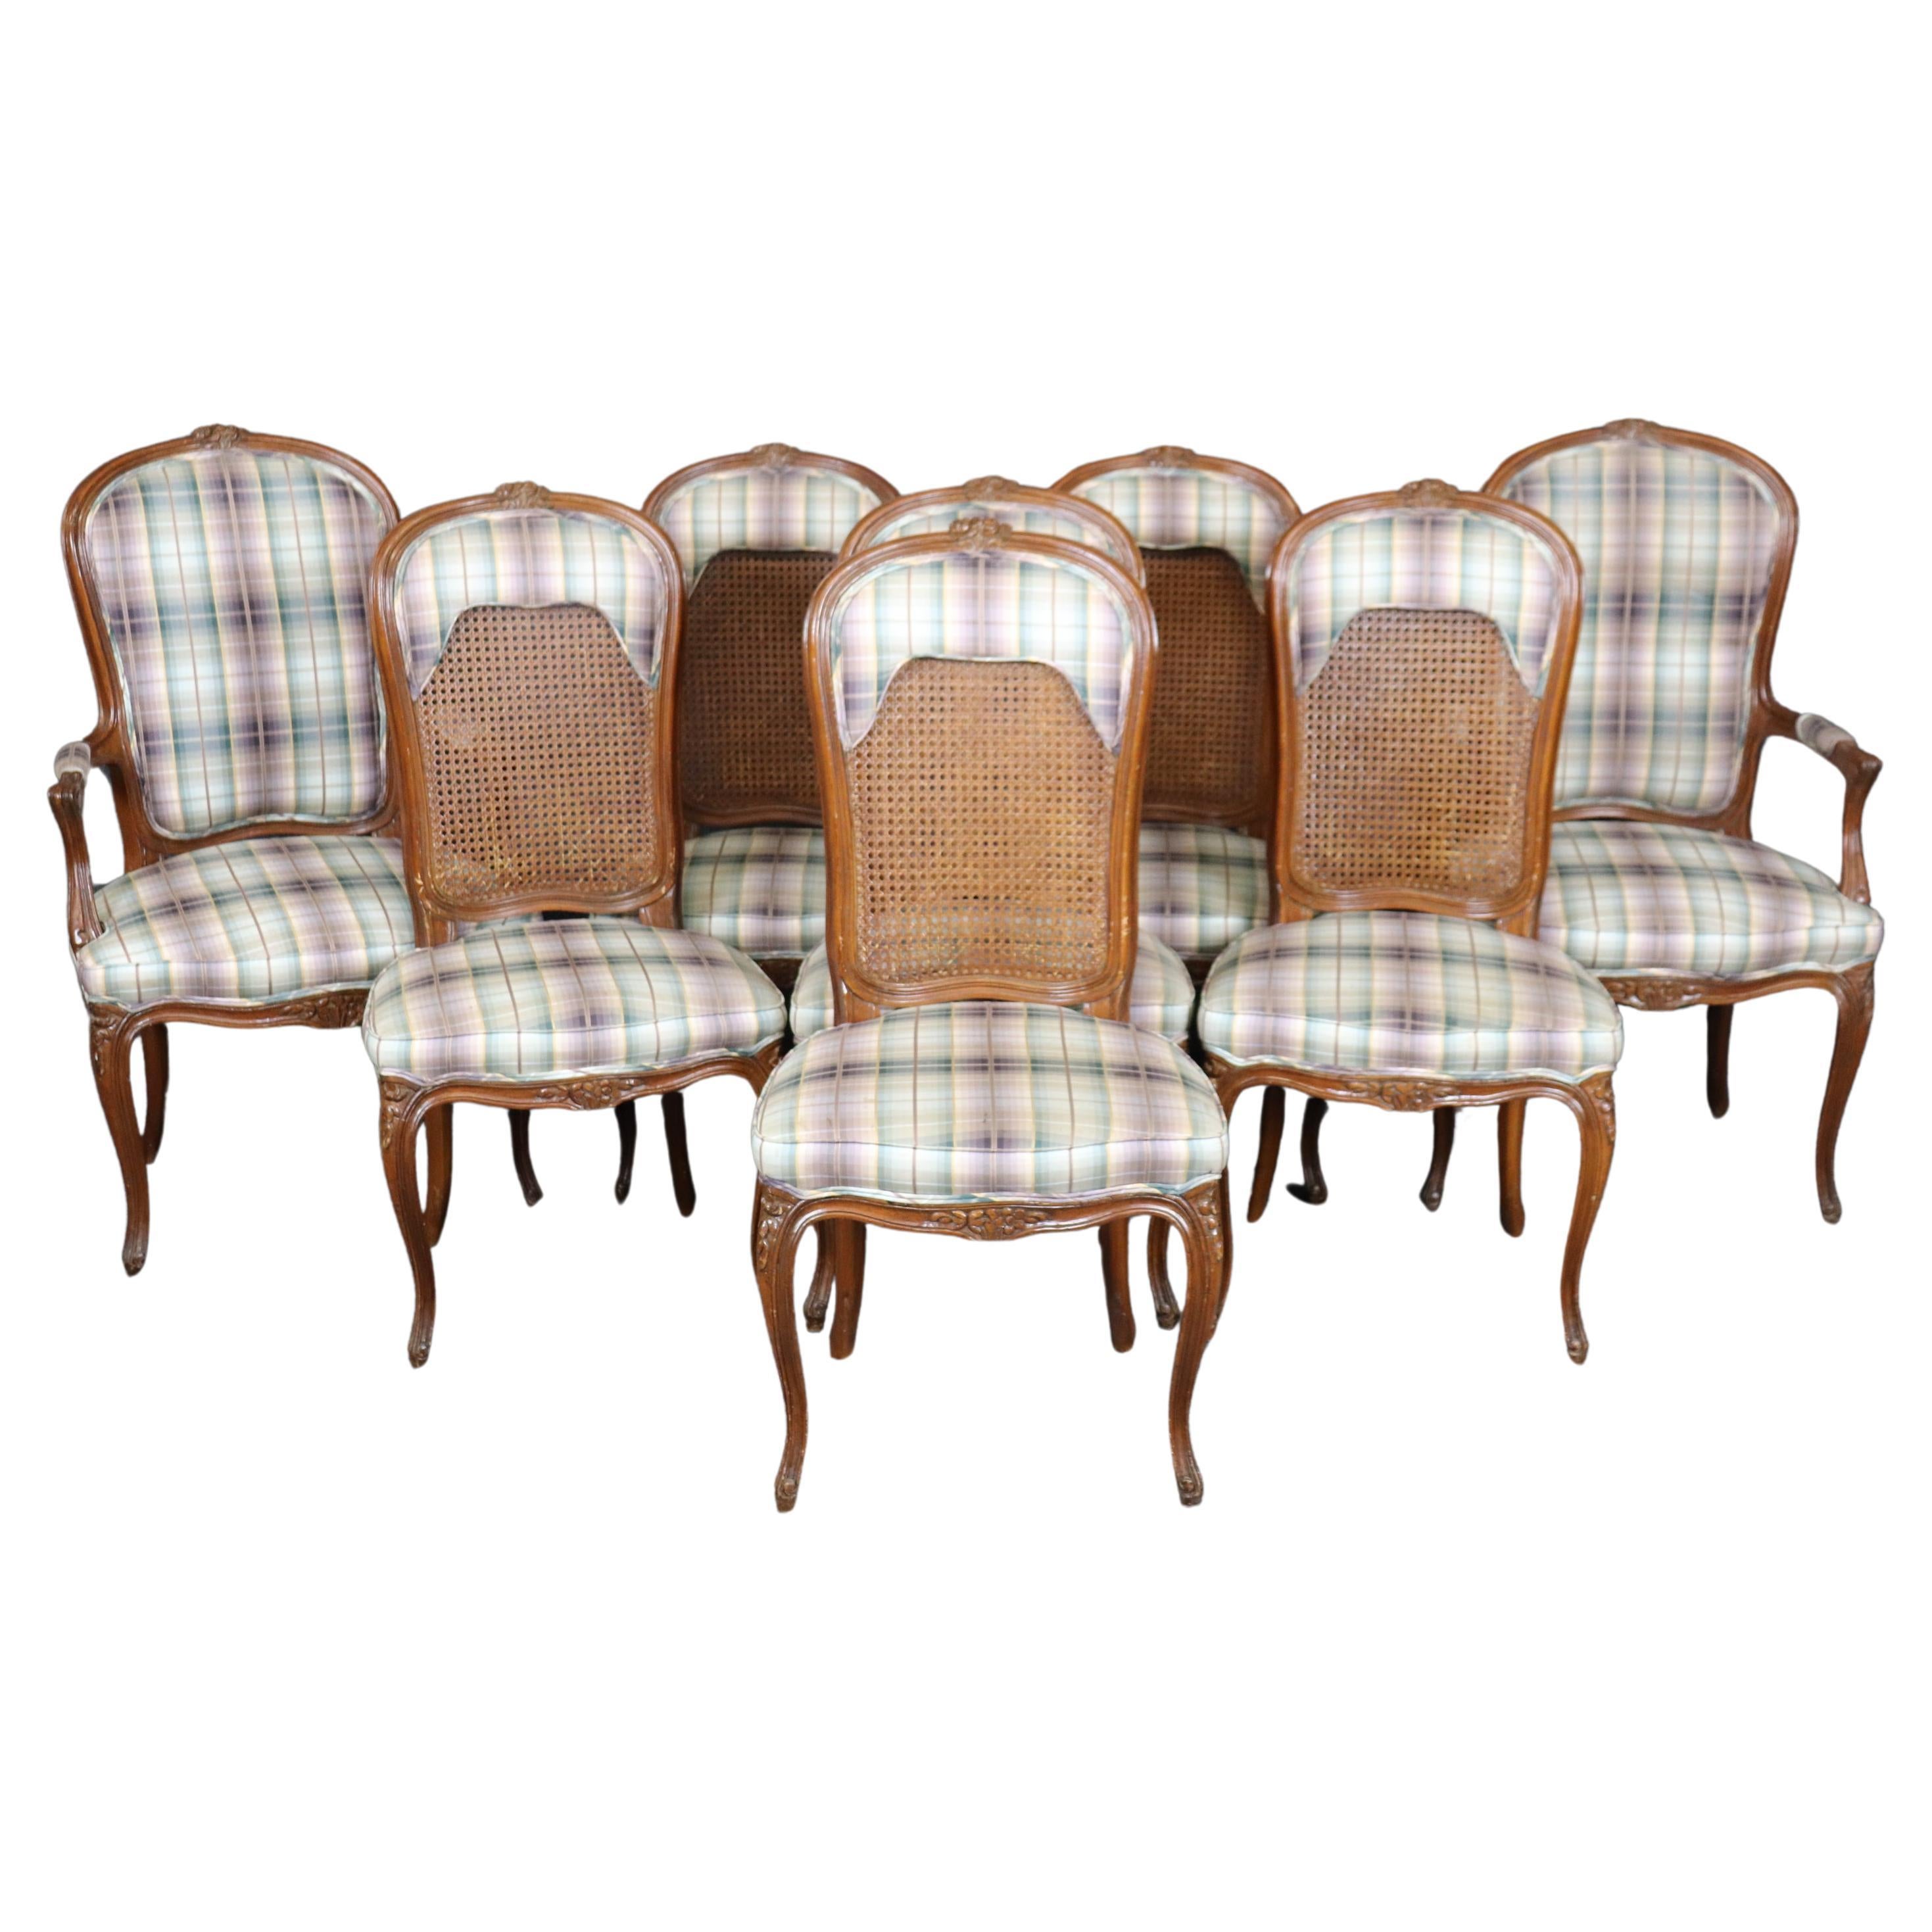 Ensemble de 8 chaises de salle à manger Louis XVI à dossier canné et tapissé 